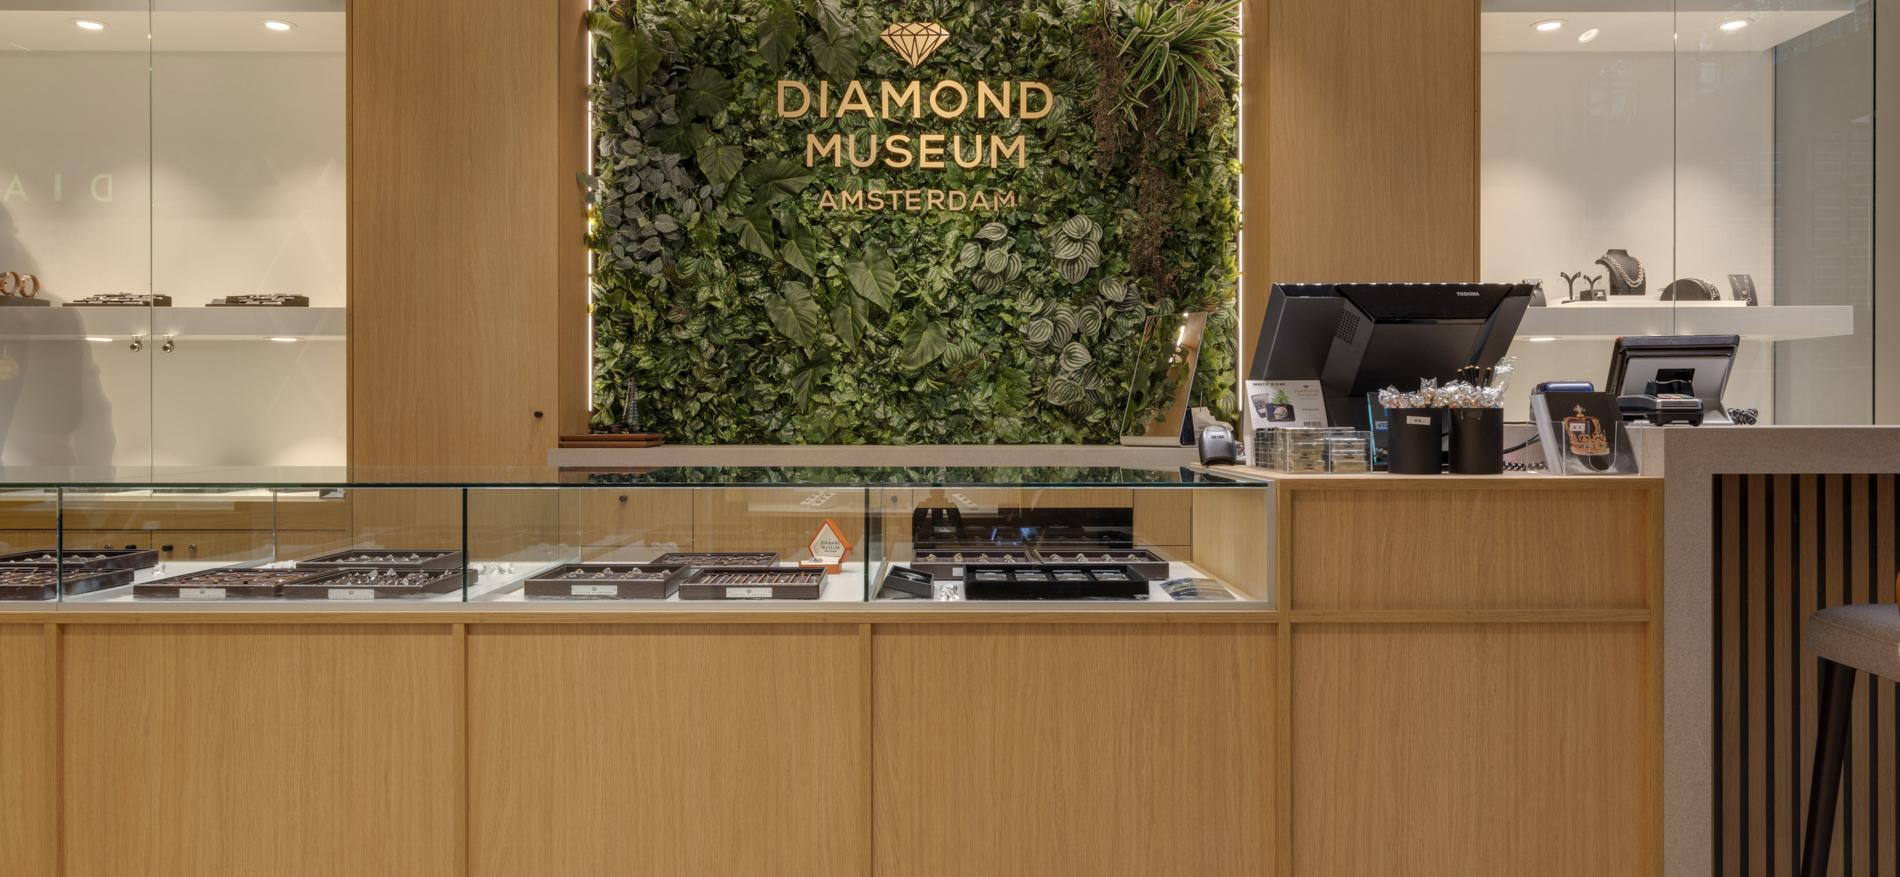 Diamond Museum | Amsterdam (NL) - Jeweler